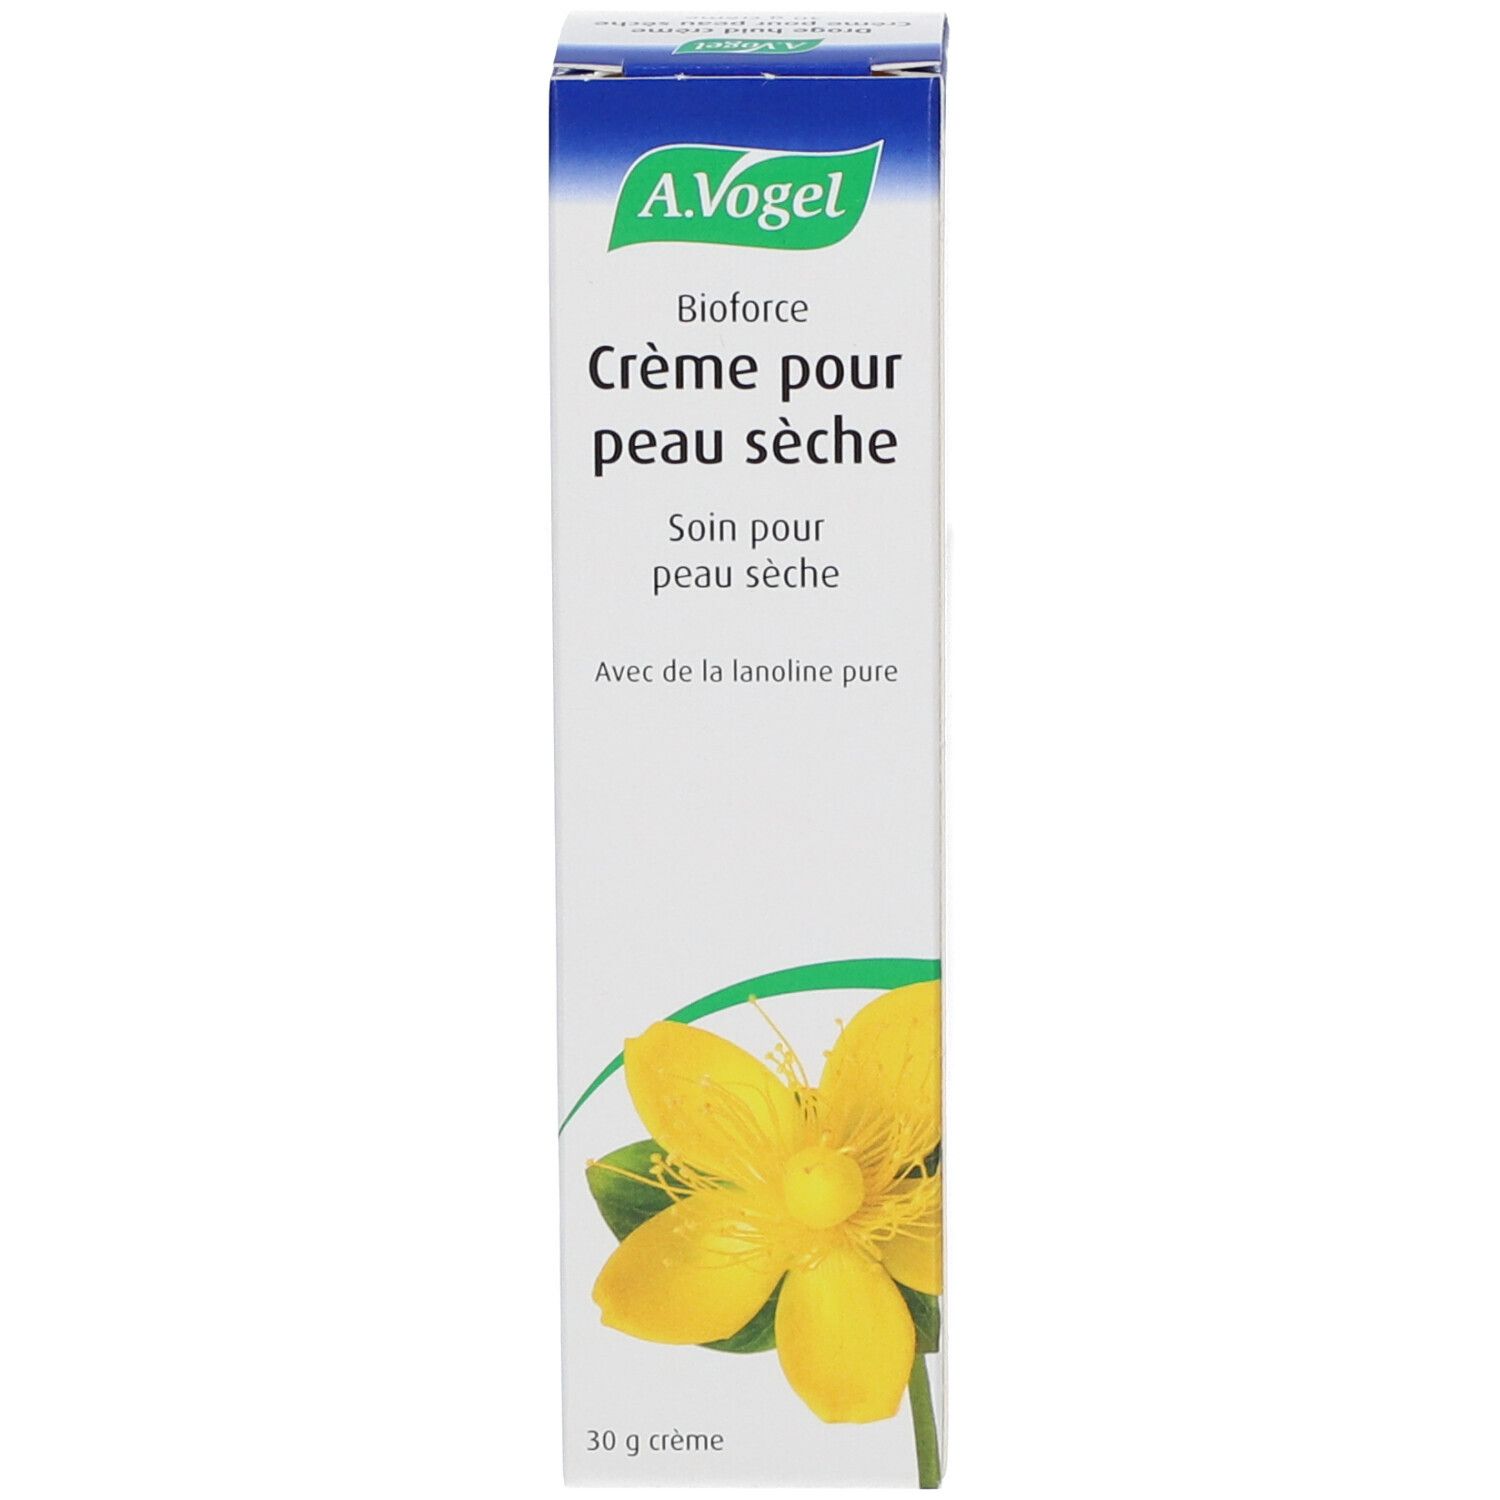 A.Vogel Bioforce Cream